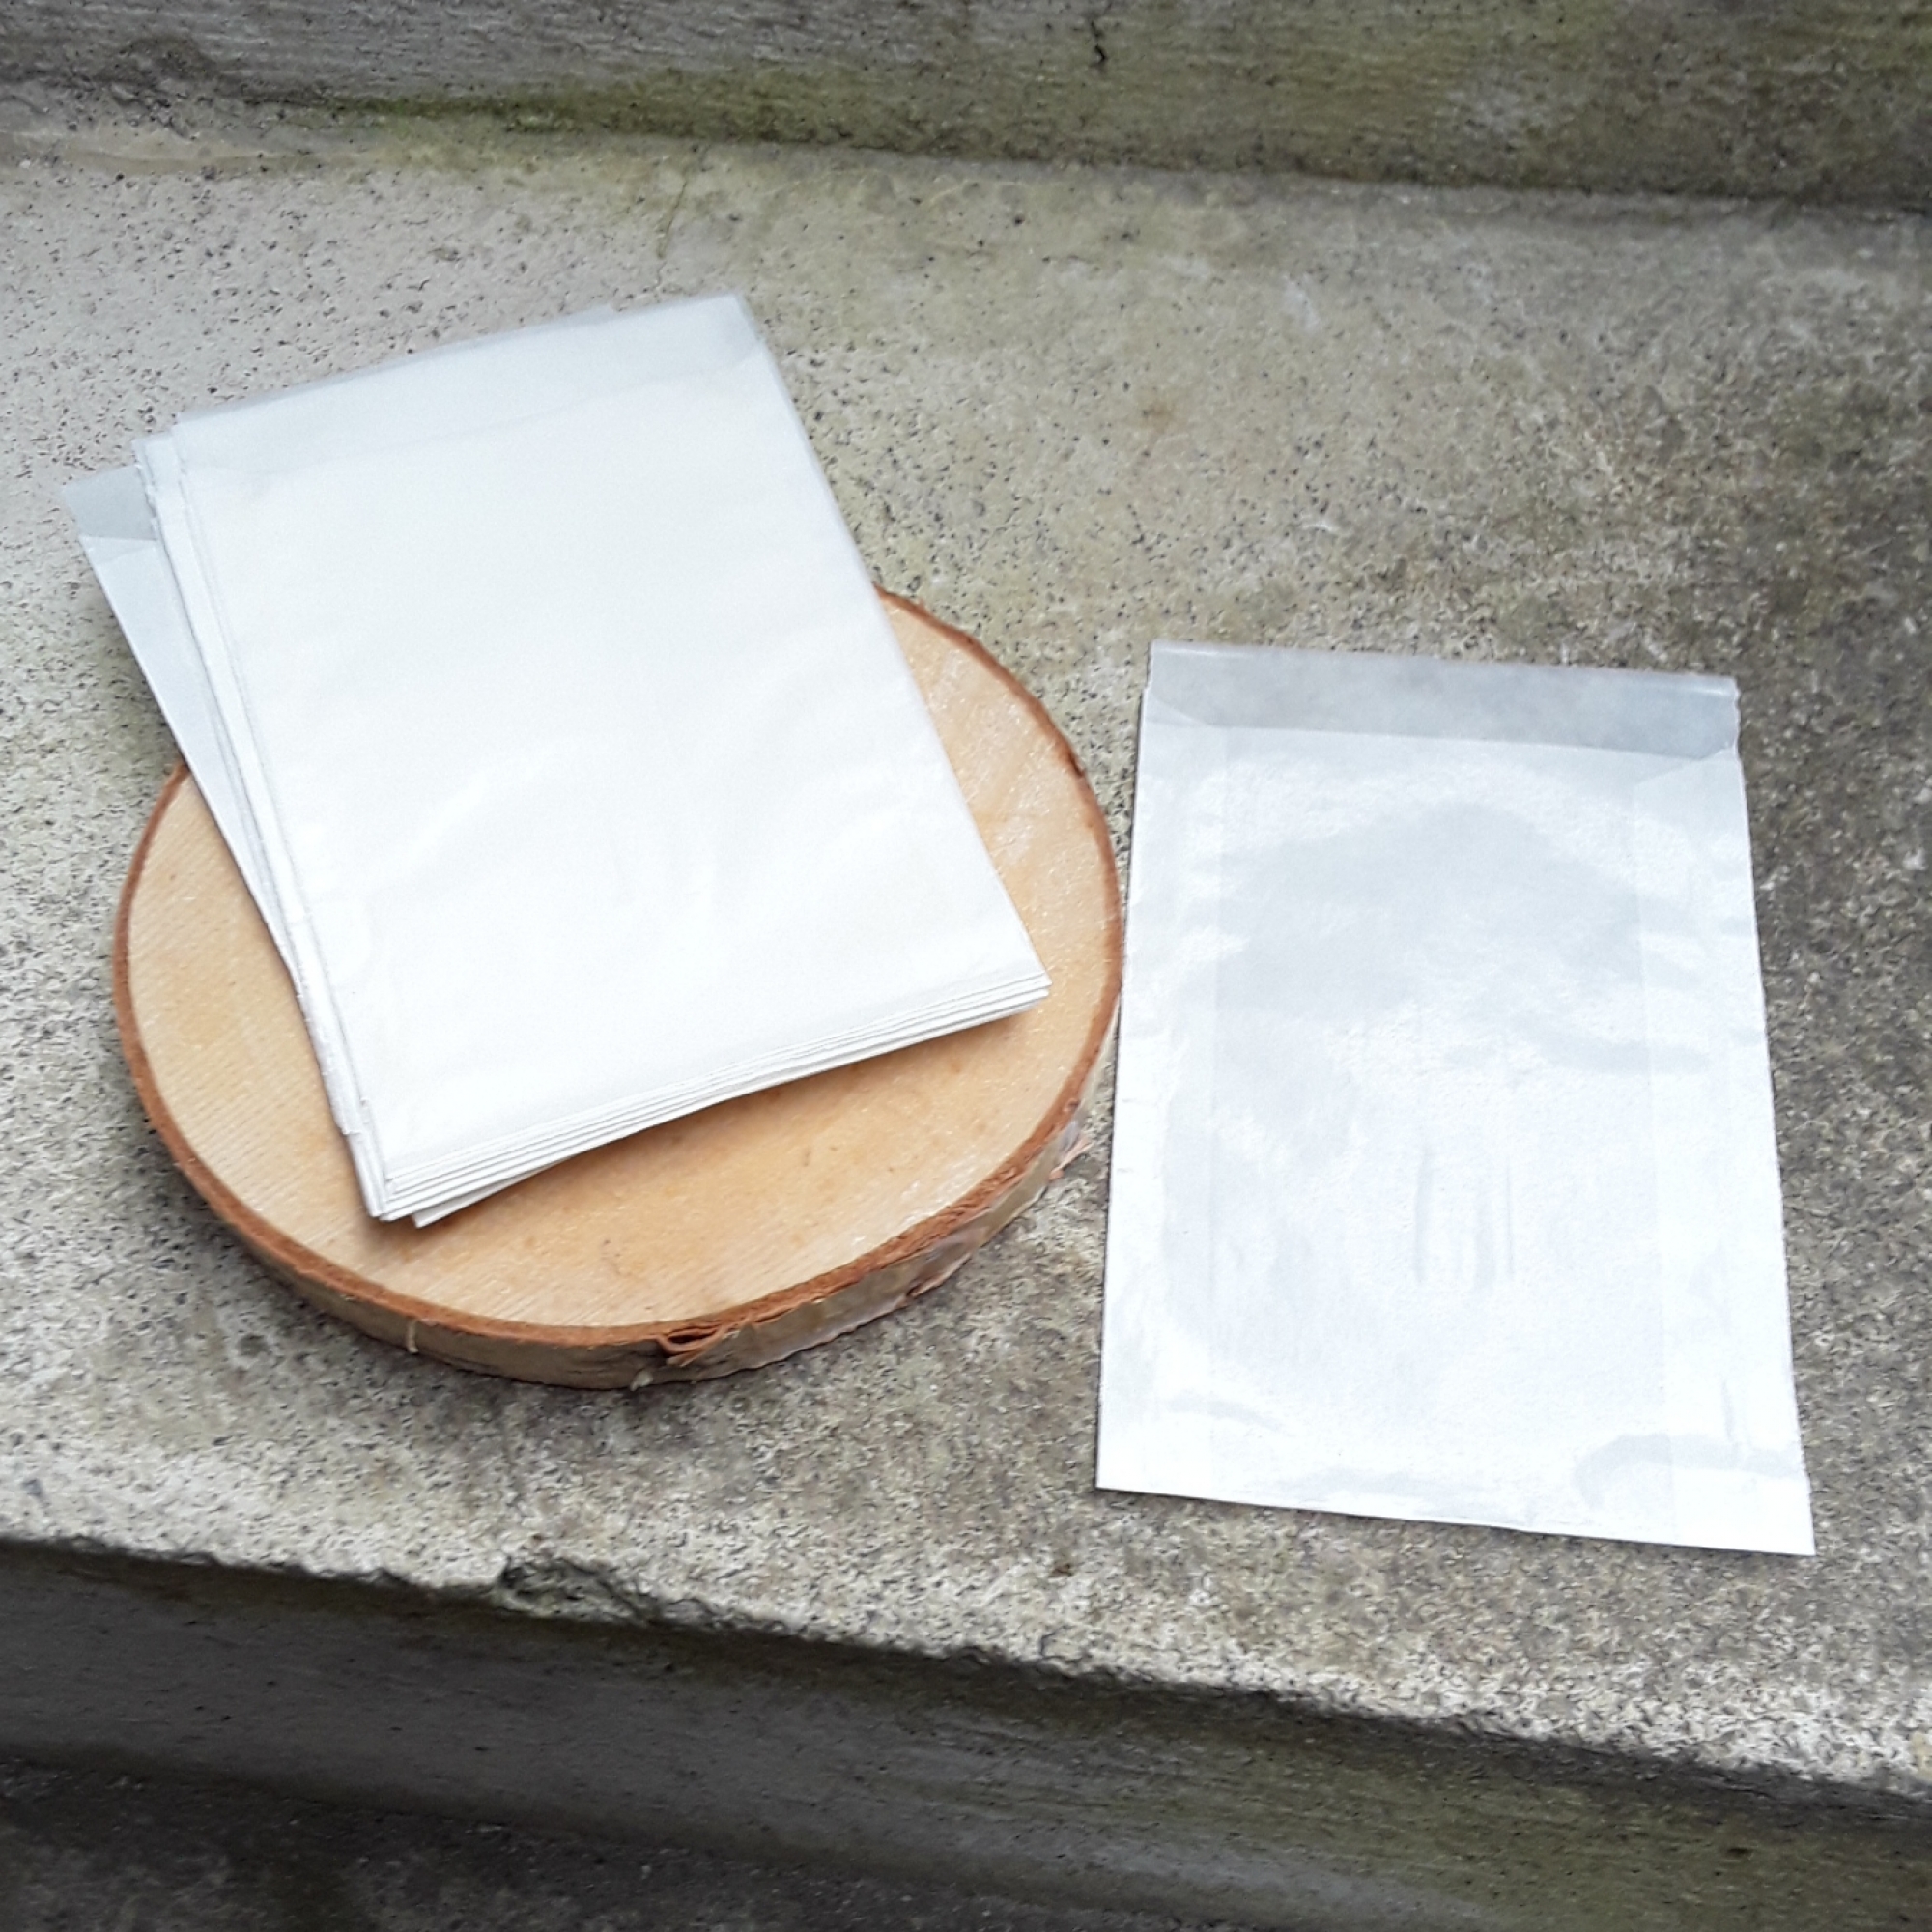 10 Pergamin Papiertüten Pergaminbeutel Tüten Papier transparent weiß weiss 75x102 mm f. Gastgeschenke Blumensamen